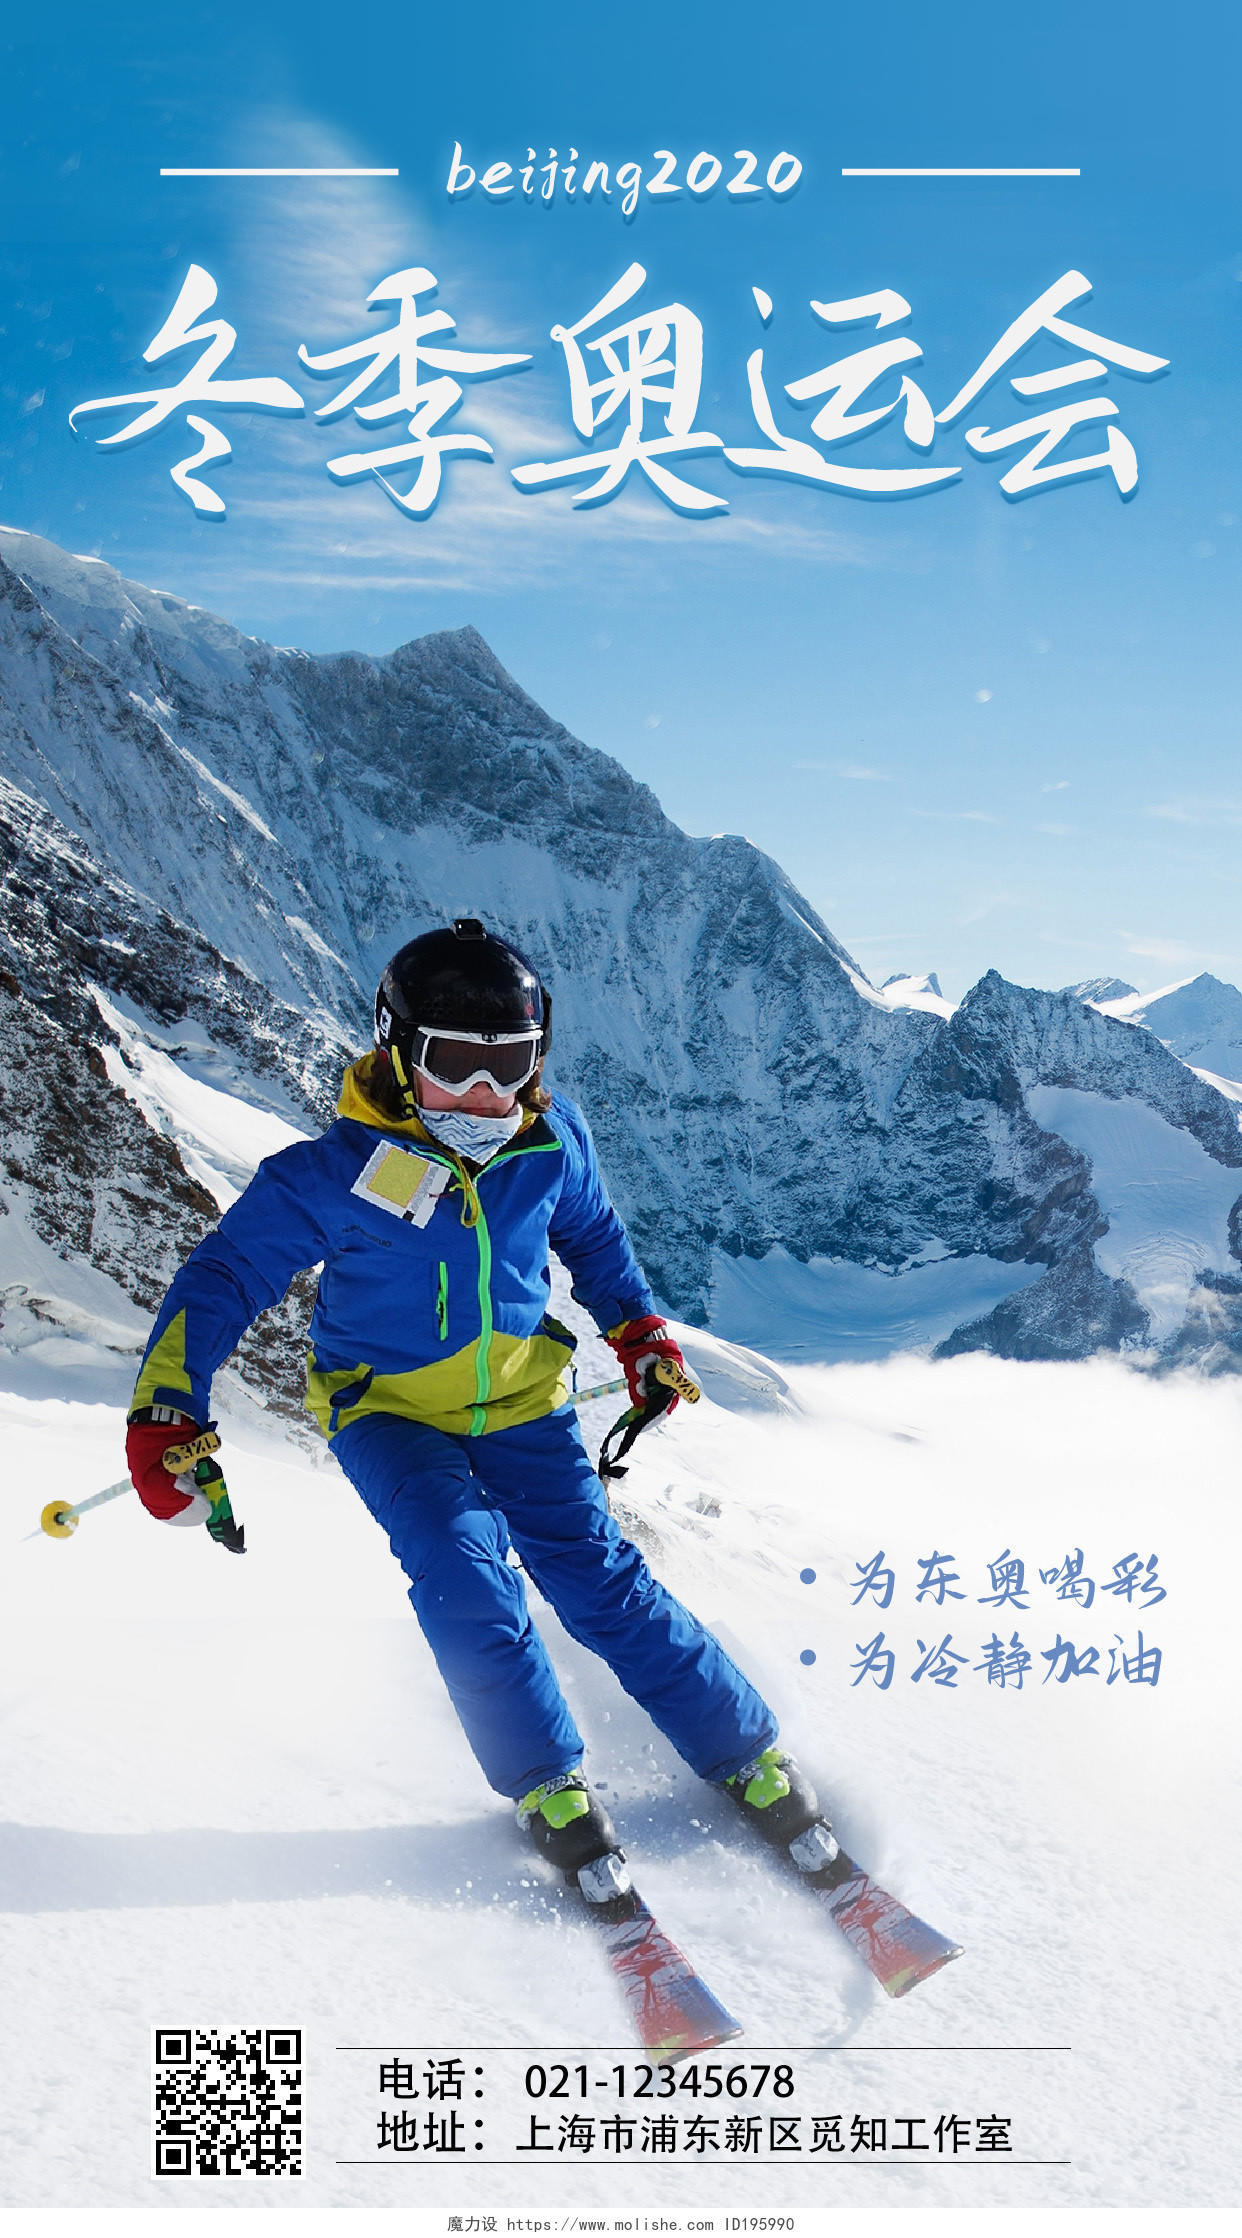 蓝色冬季奥运会滑雪比赛为奥运喝彩雪景实景手机宣传海报冬奥会手机宣传海报